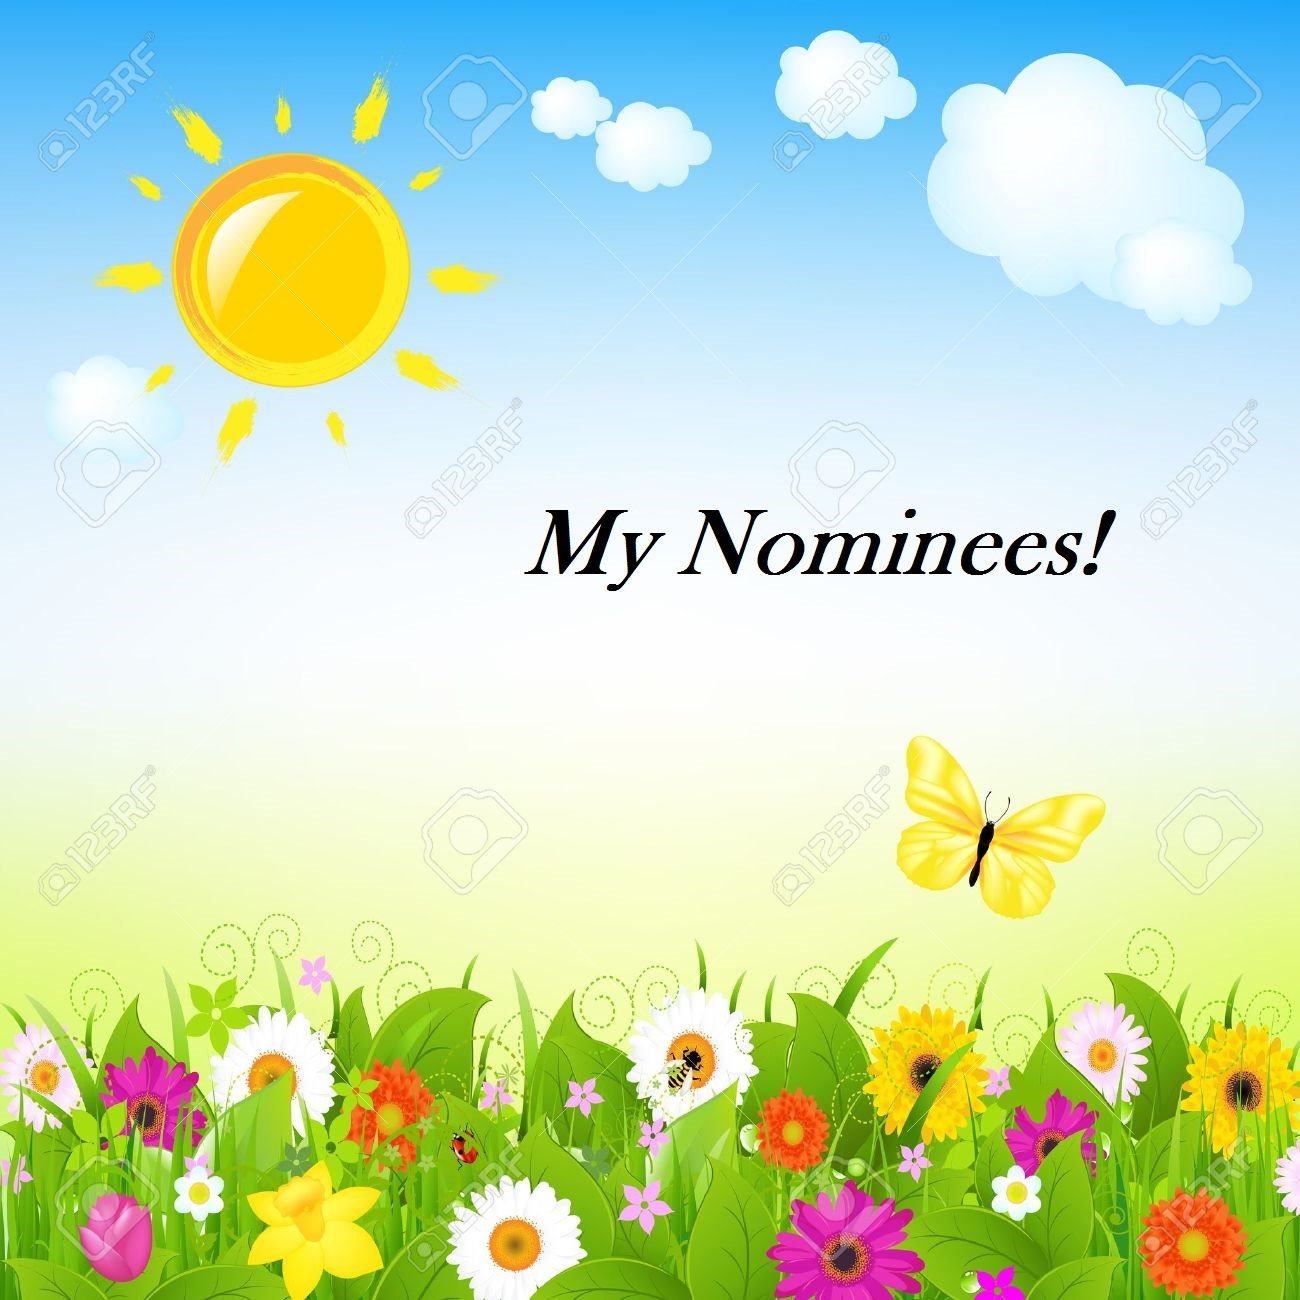 My Nominees